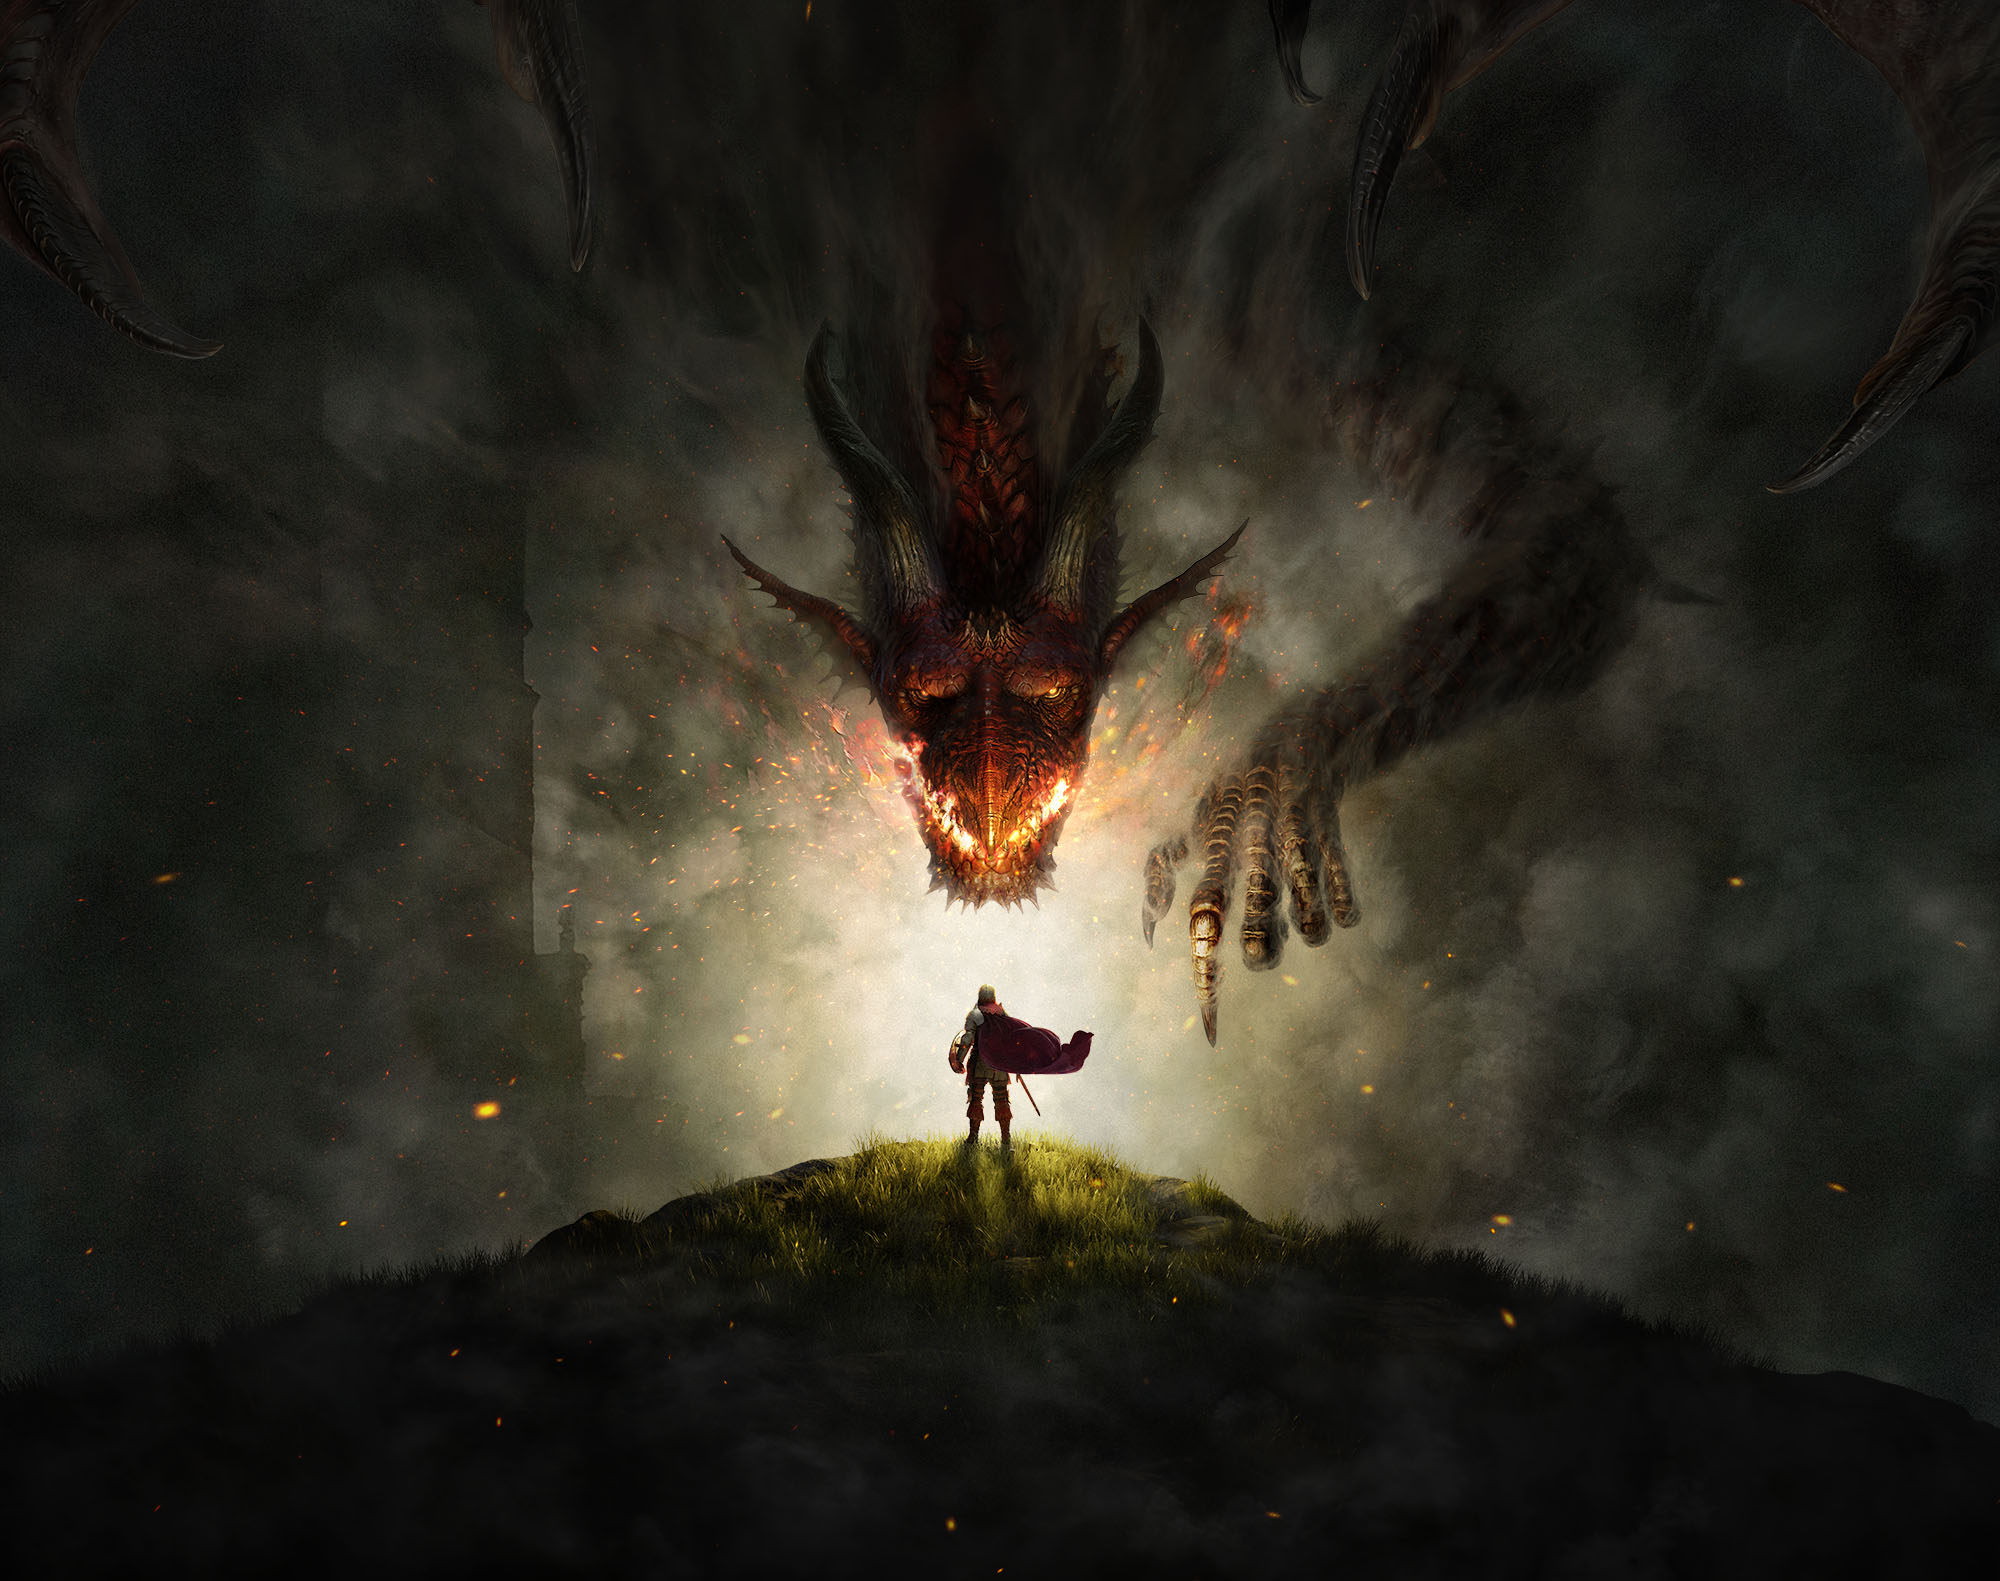 Dragon's Dogma - Ep1: Dragons 